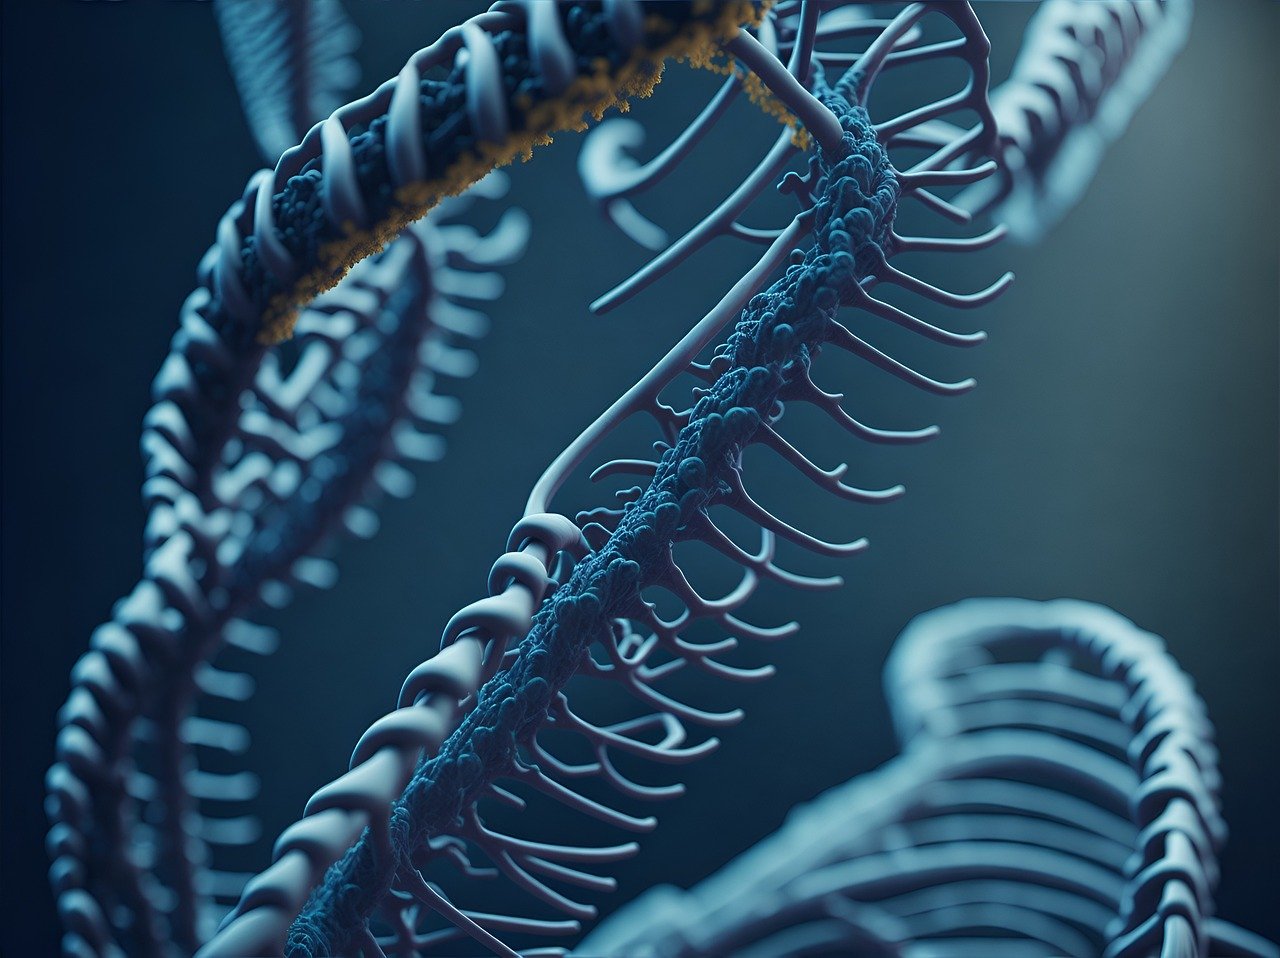 Fotografija prikazuje model dvostruke spirale DNK. Struktura je detaljno prikazana s plavim i zlatnim tonovima koji naglašavaju oblik i dubinu spirale. Ova slika je zanimljiva jer ilustrira složenost molekularne strukture koja je temelj genetskih informacija svih živih bića.